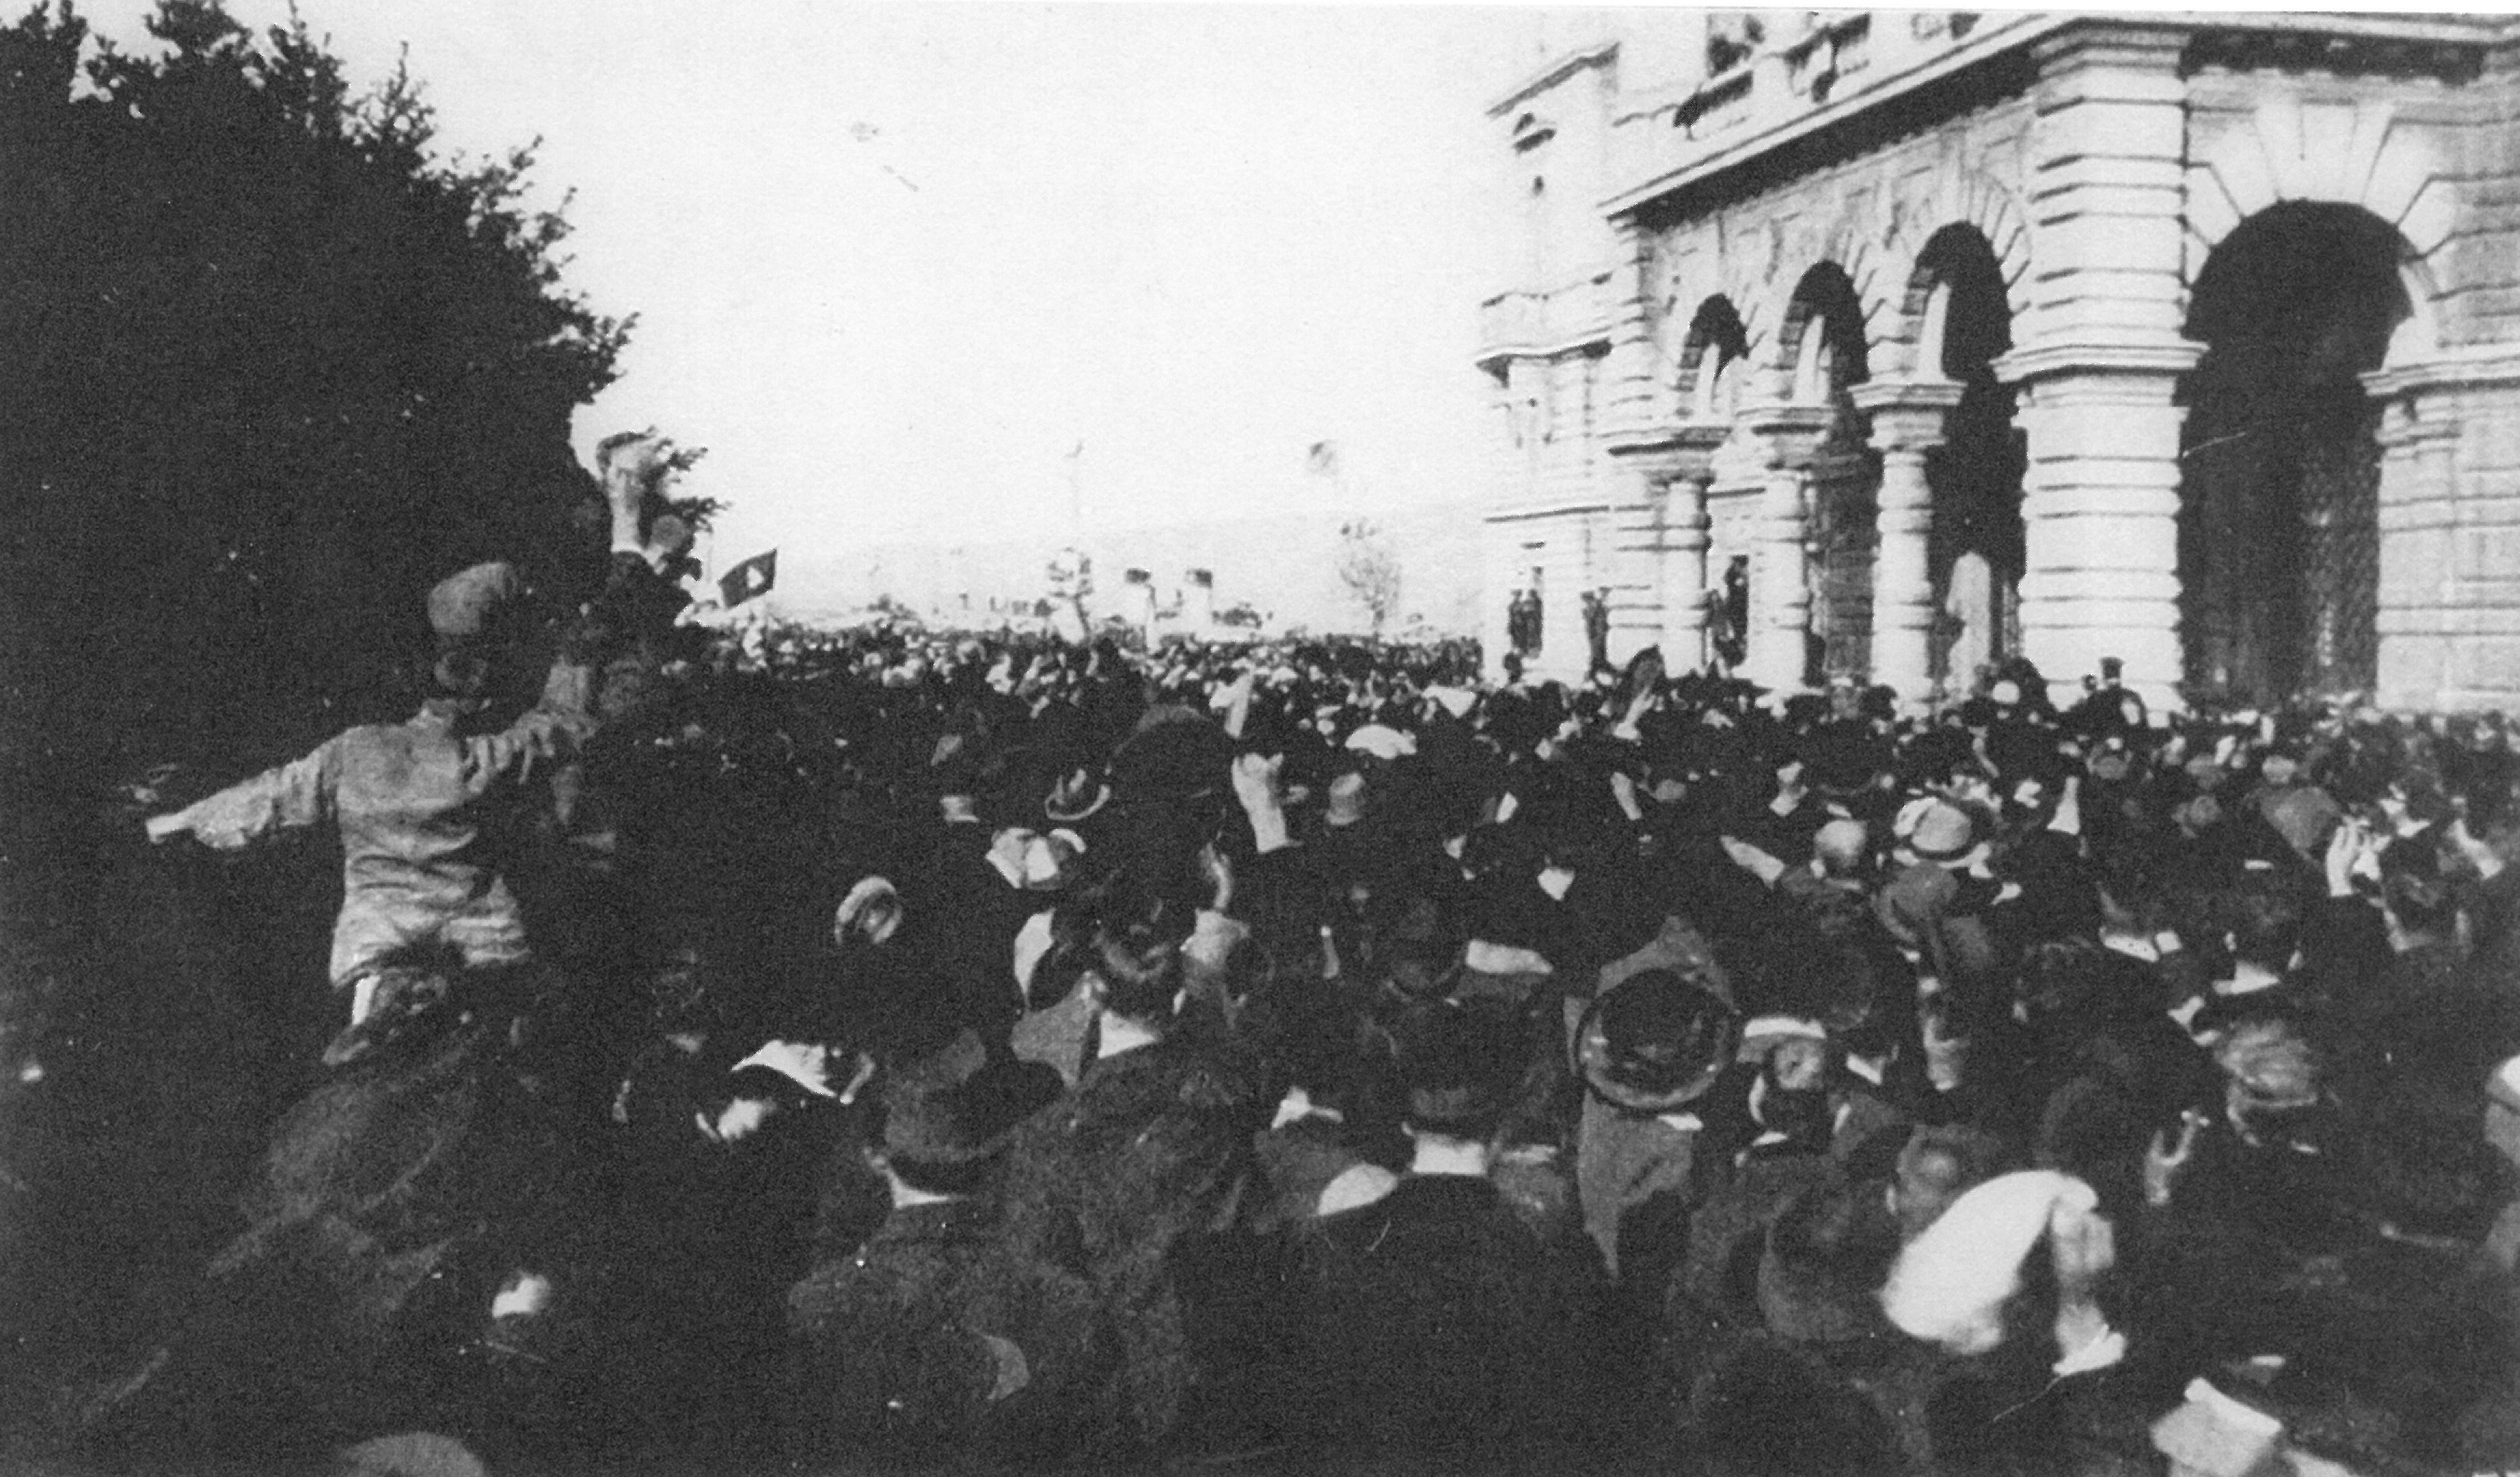 La folla festante in piazza a Trieste